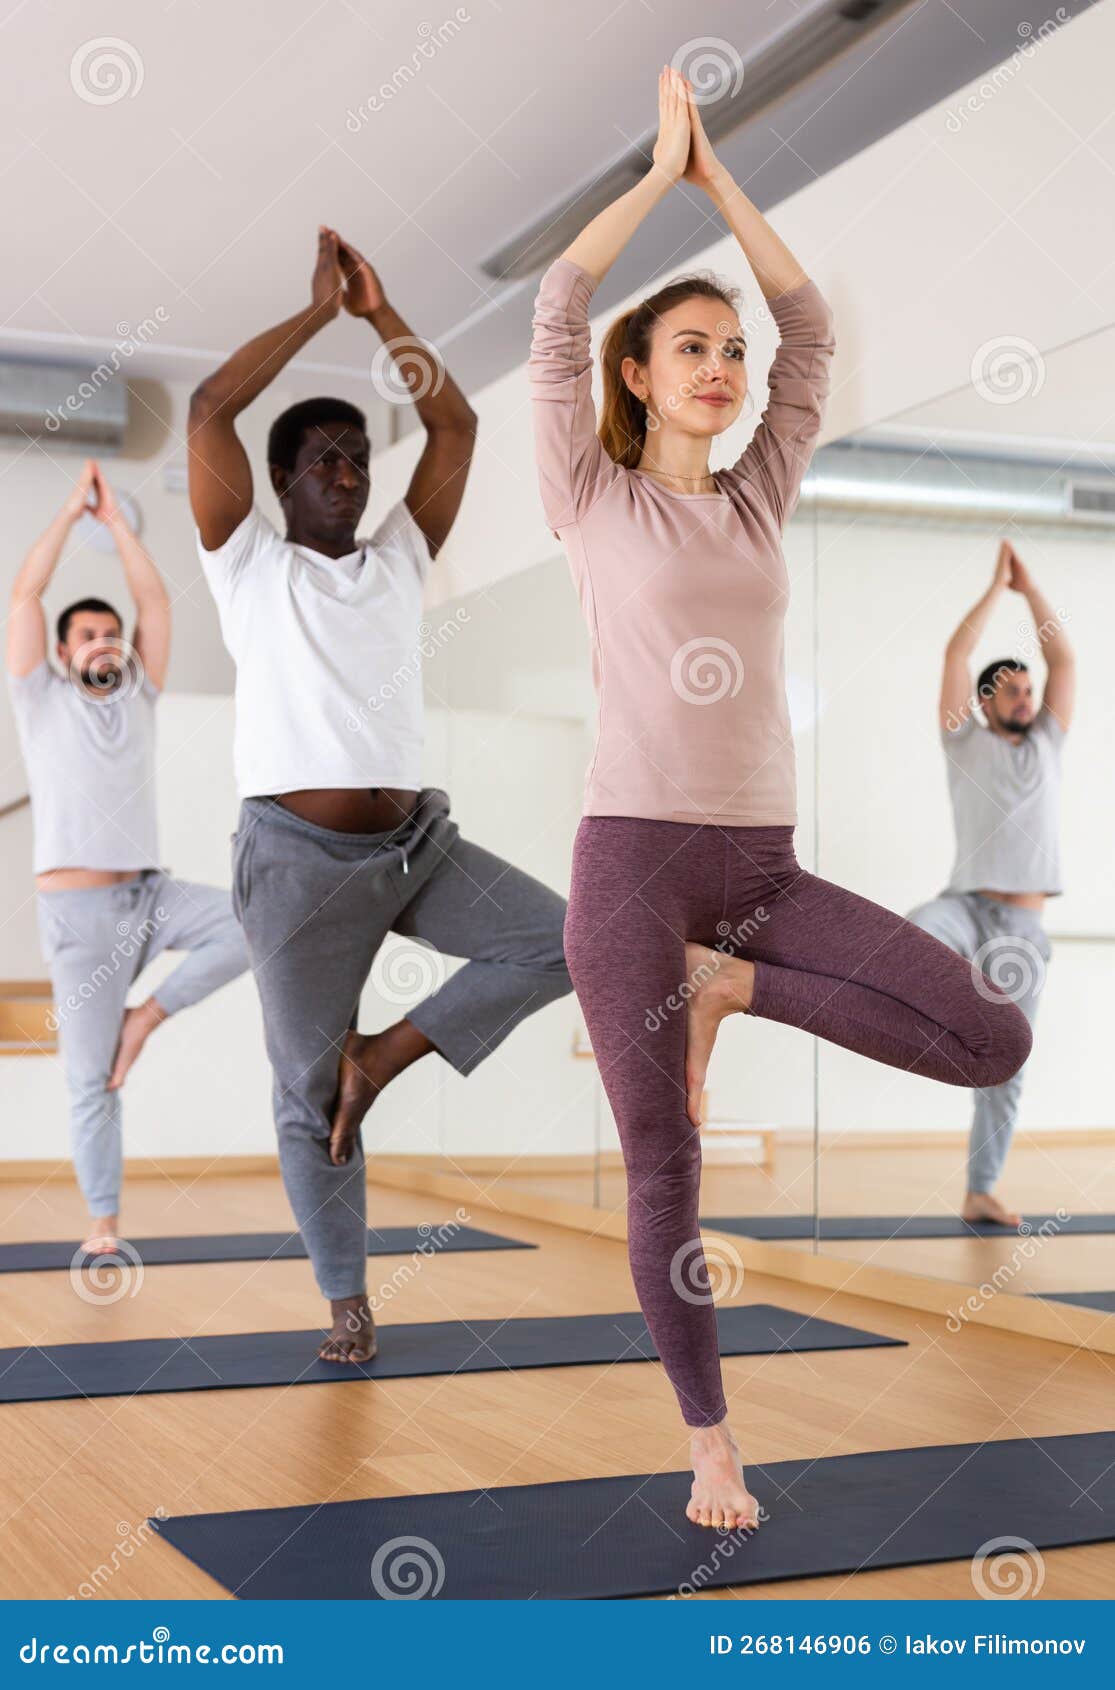 Group yoga poses, Yoga photos, Group yoga